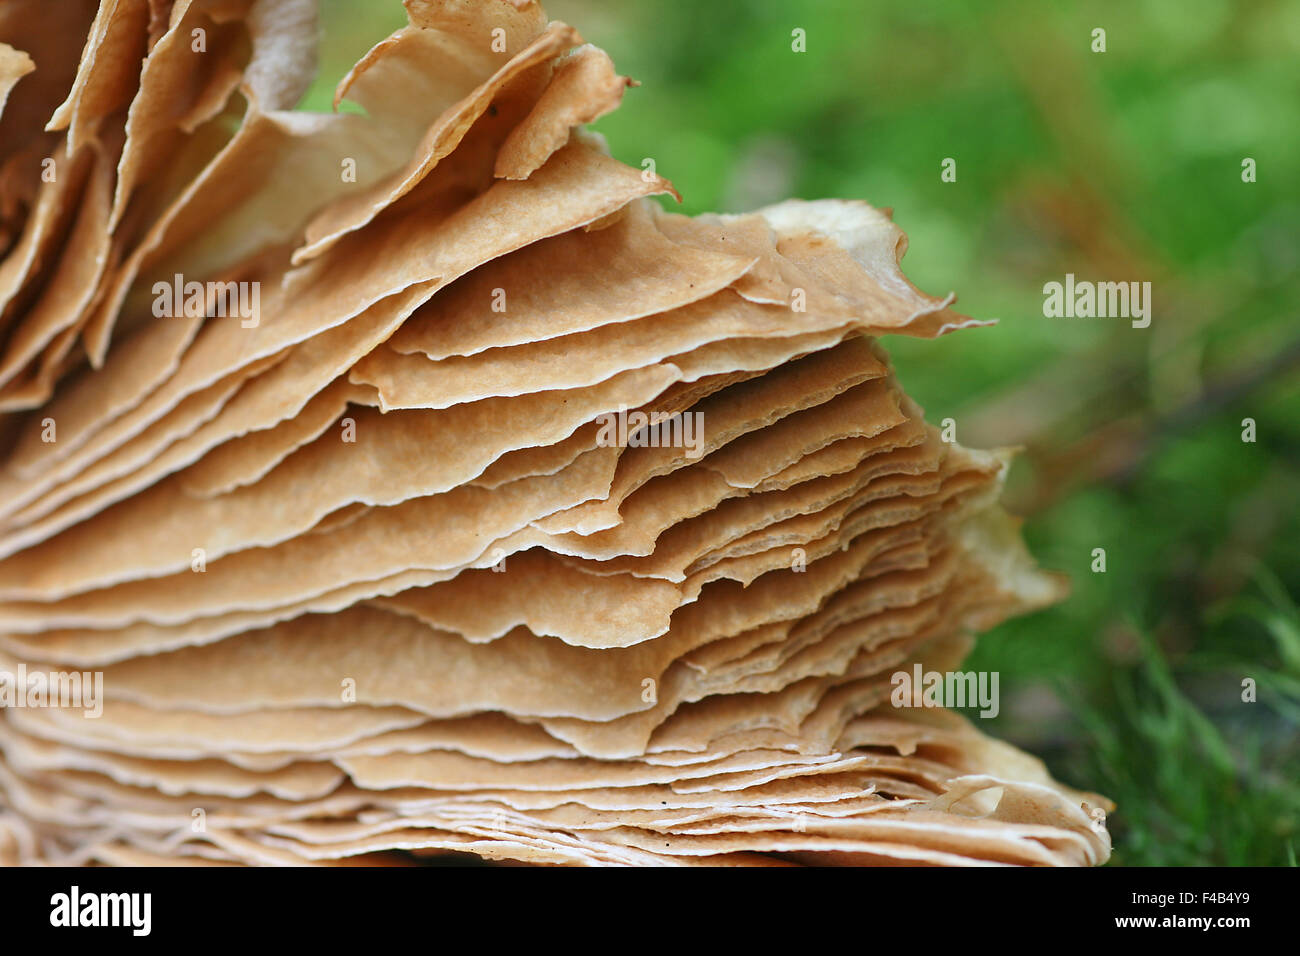 gypsy mushroom Stock Photo